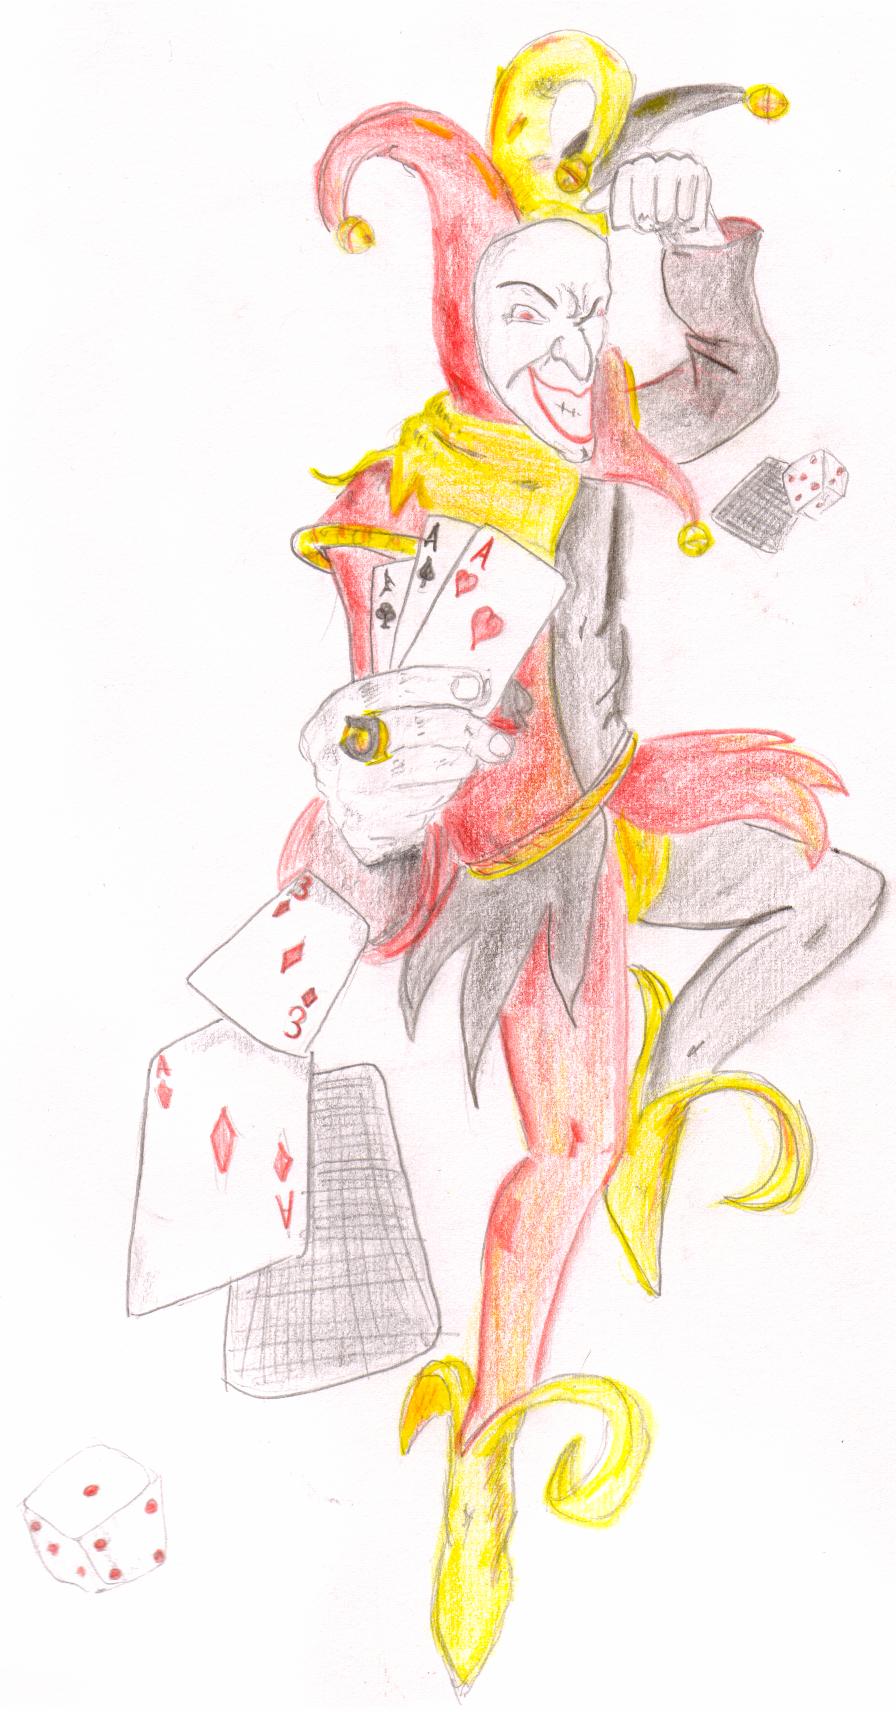 evil jester by harleyfan1